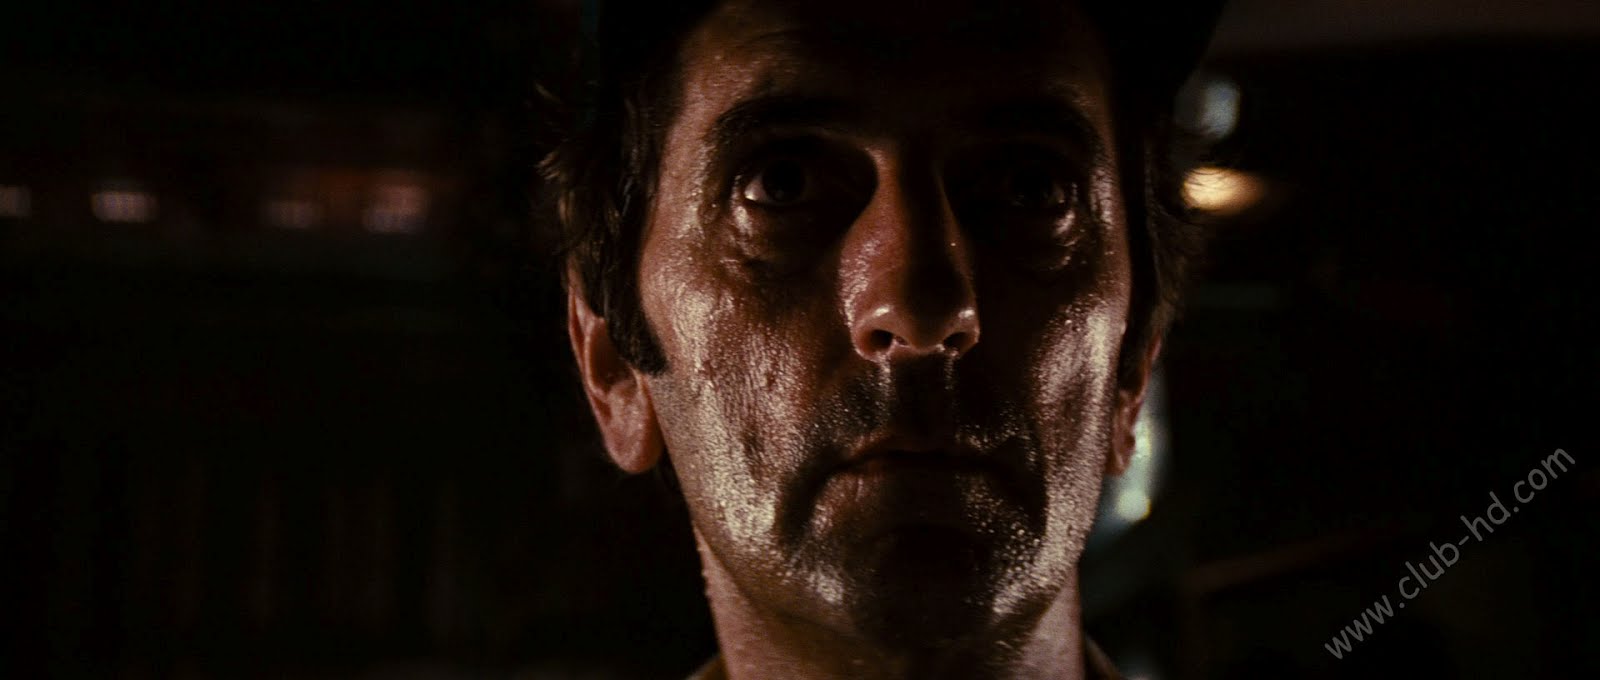 Alien (1979) Director's Cut 1080p BDRip Dual Latino-Ingles [Subt. Esp] (Ciencia ficción. Terror)